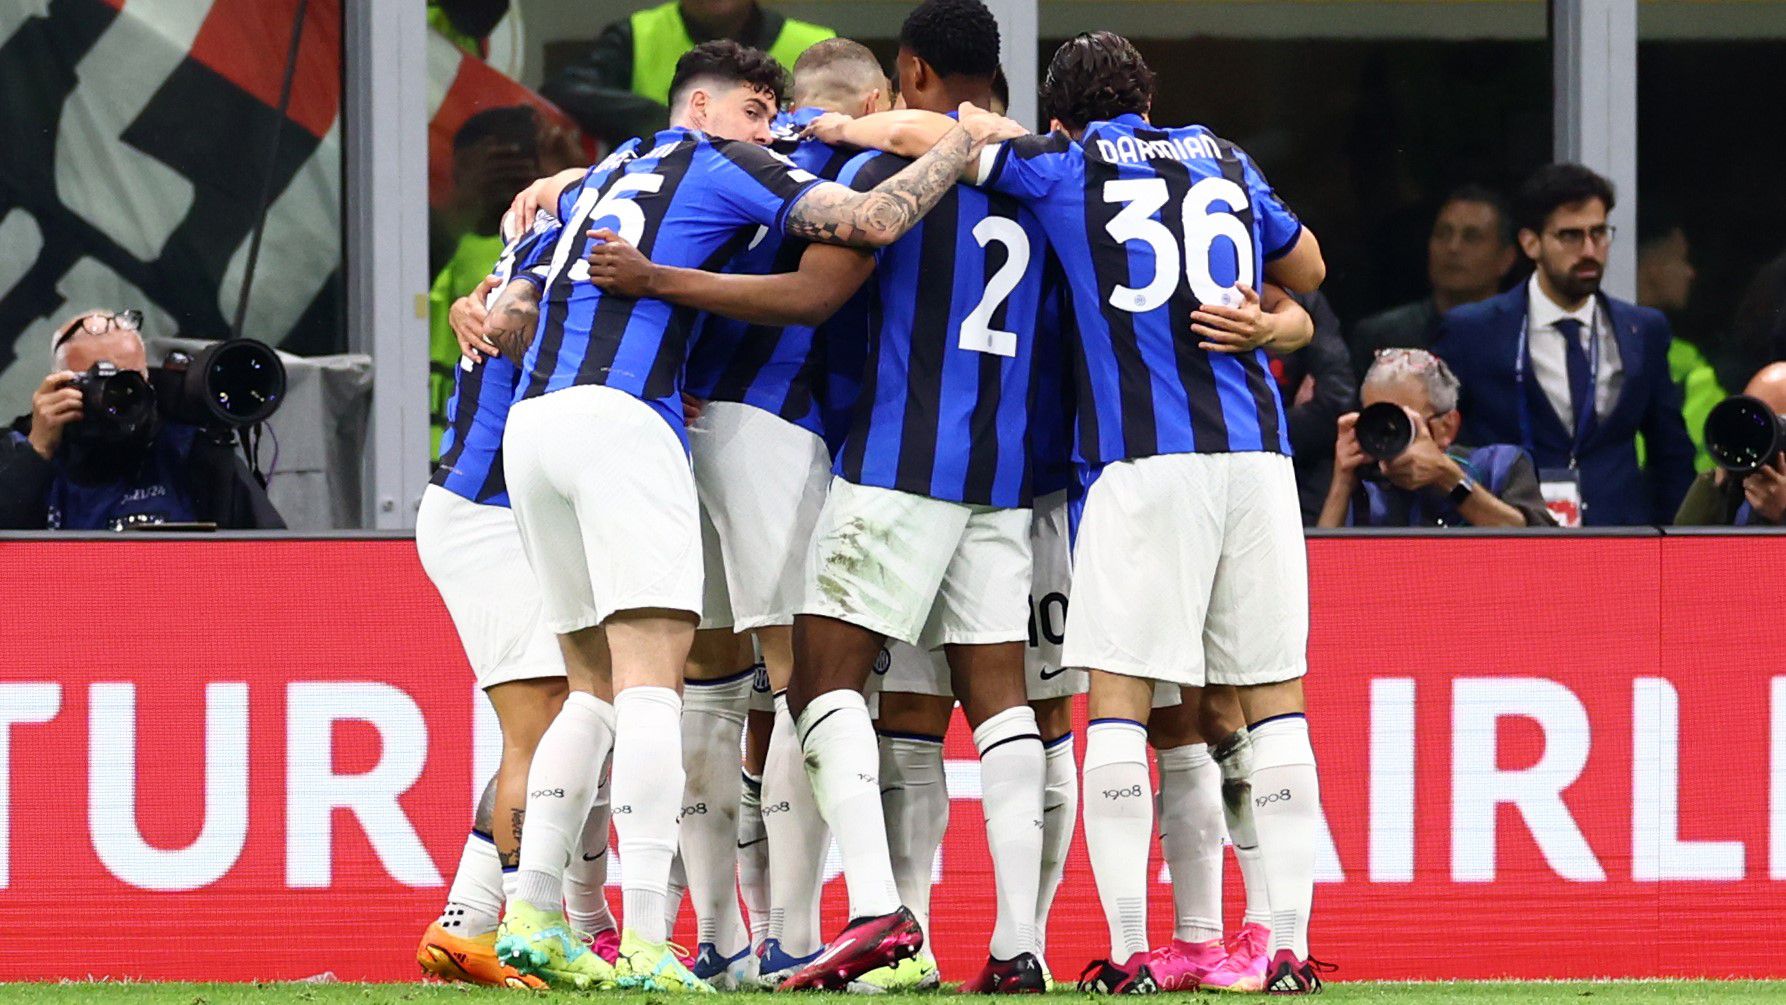 Tizenegy perc alatt elintézte az Inter a városi riválist – videóval